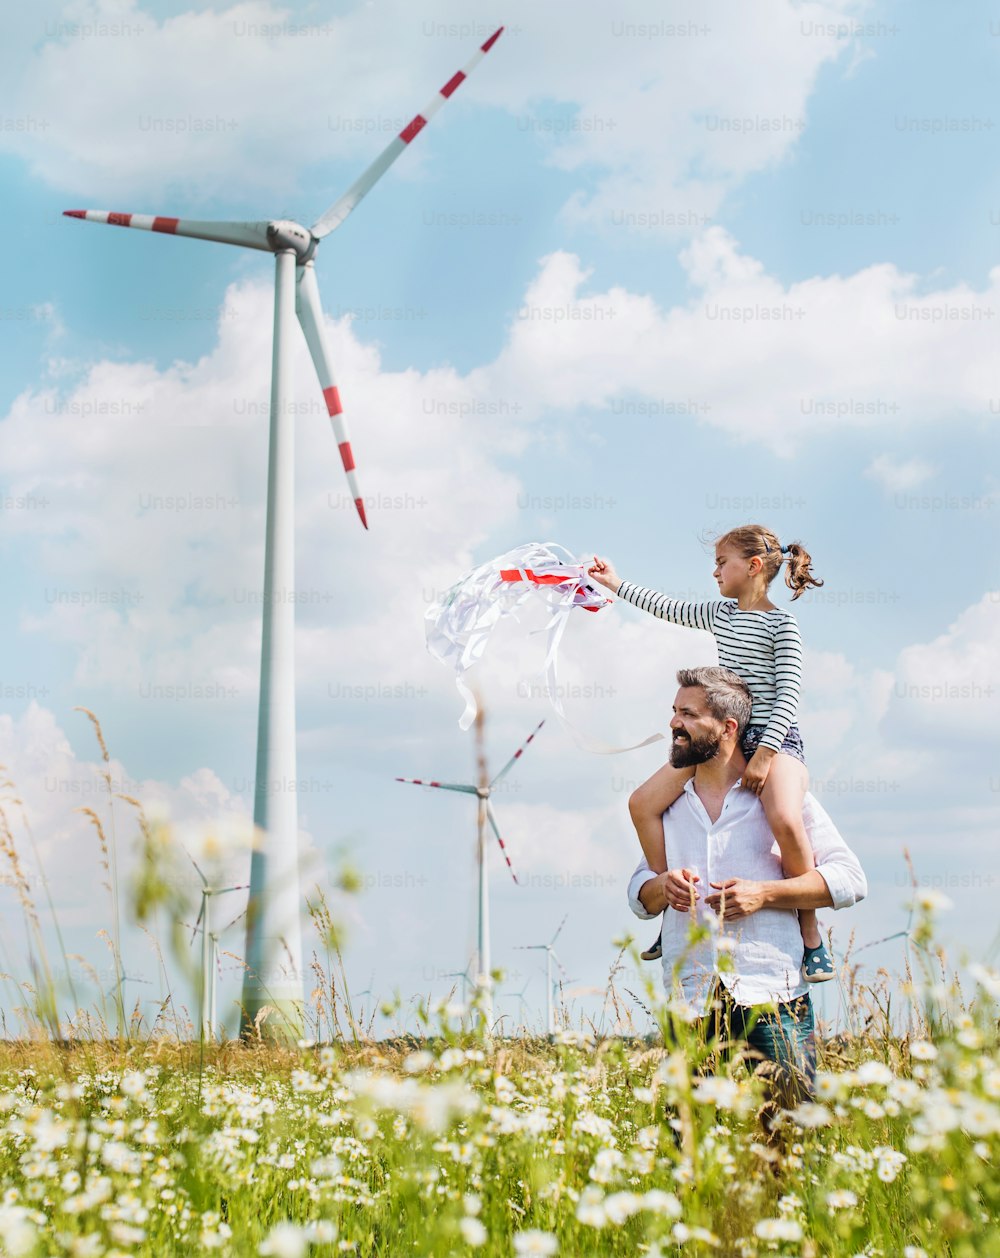 Père mûr avec une petite fille marchant sur le champ d’un parc éolien, lui donnant un tour de ferroutage.